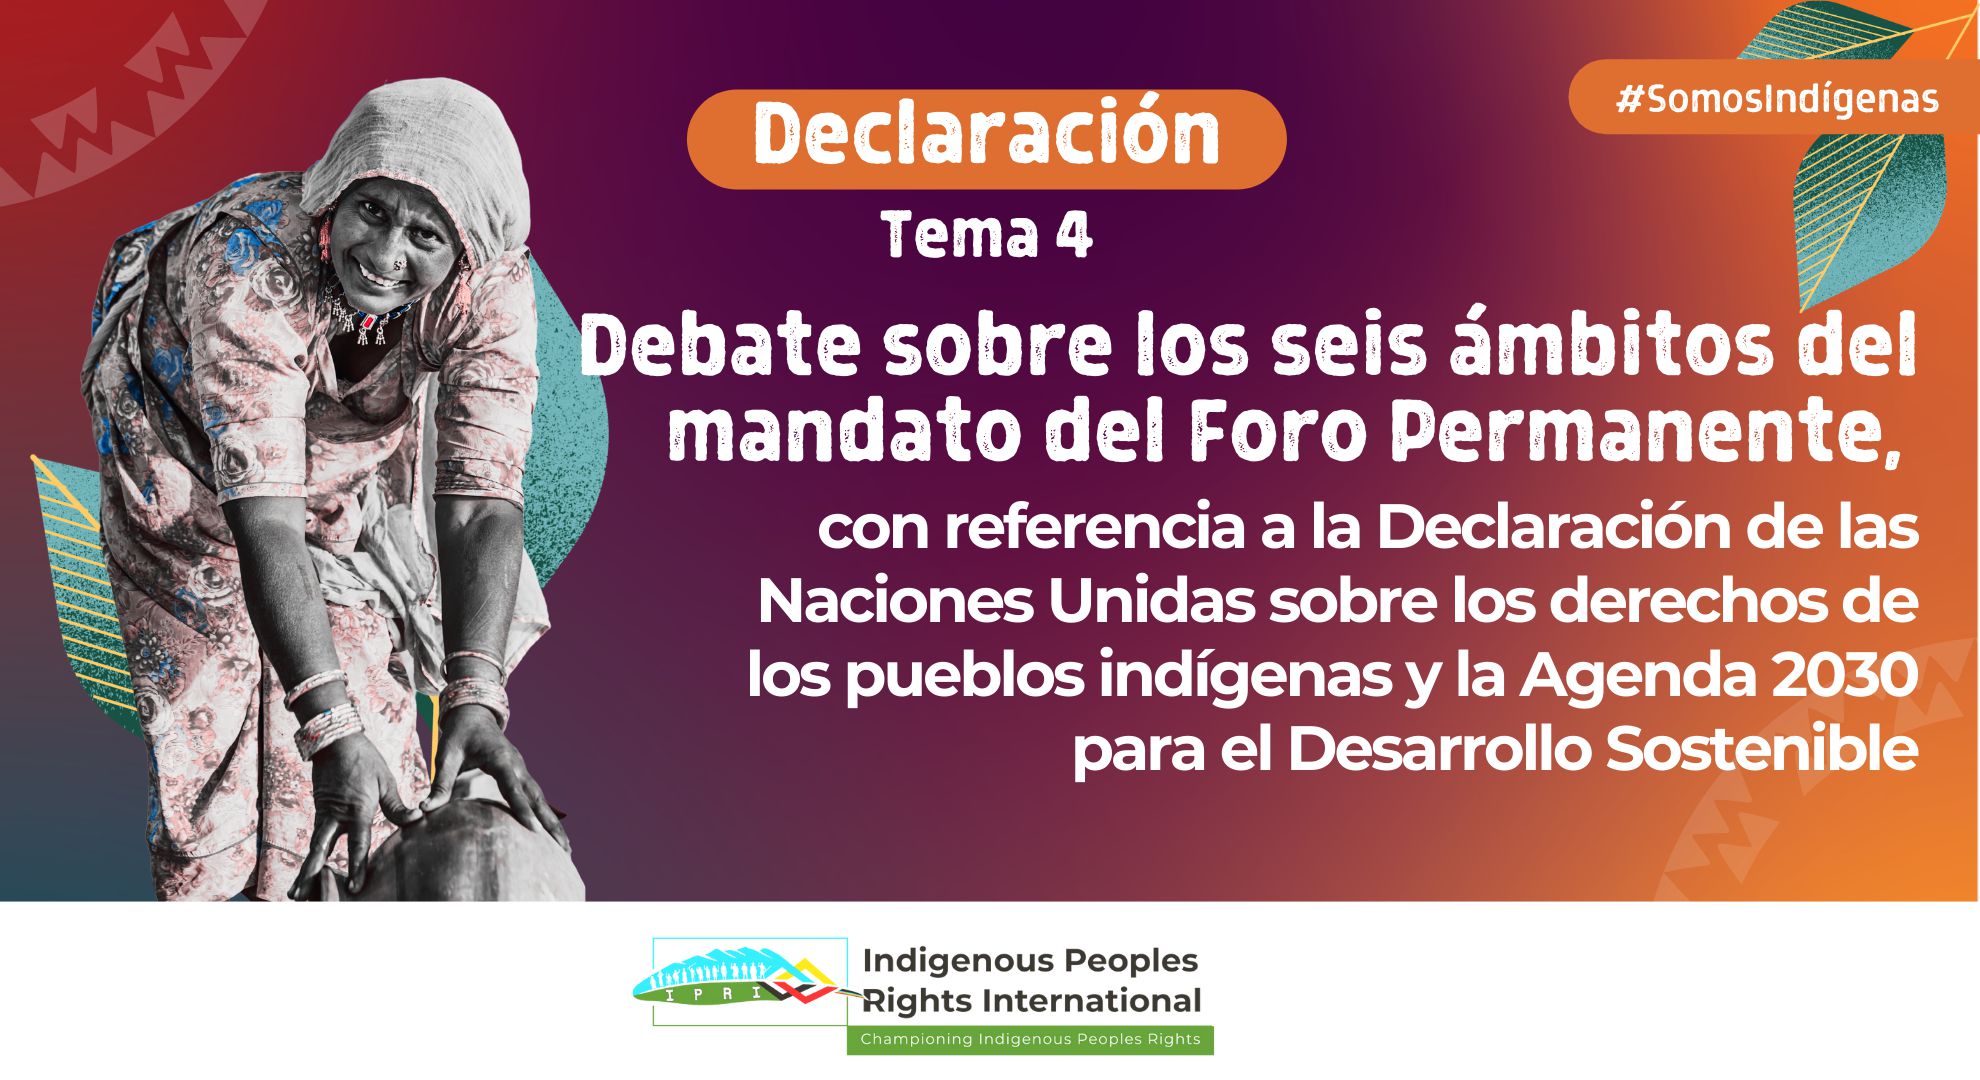 22 Sesión del UNPFII || Tema 4. Debate sobre los seis ámbitos del mandato del Foro Permanente, con referencia a la Declaración de las Naciones Unidas sobre los derechos de los pueblos indígenas y la Agenda 2030 para el Desarrollo Sostenible.